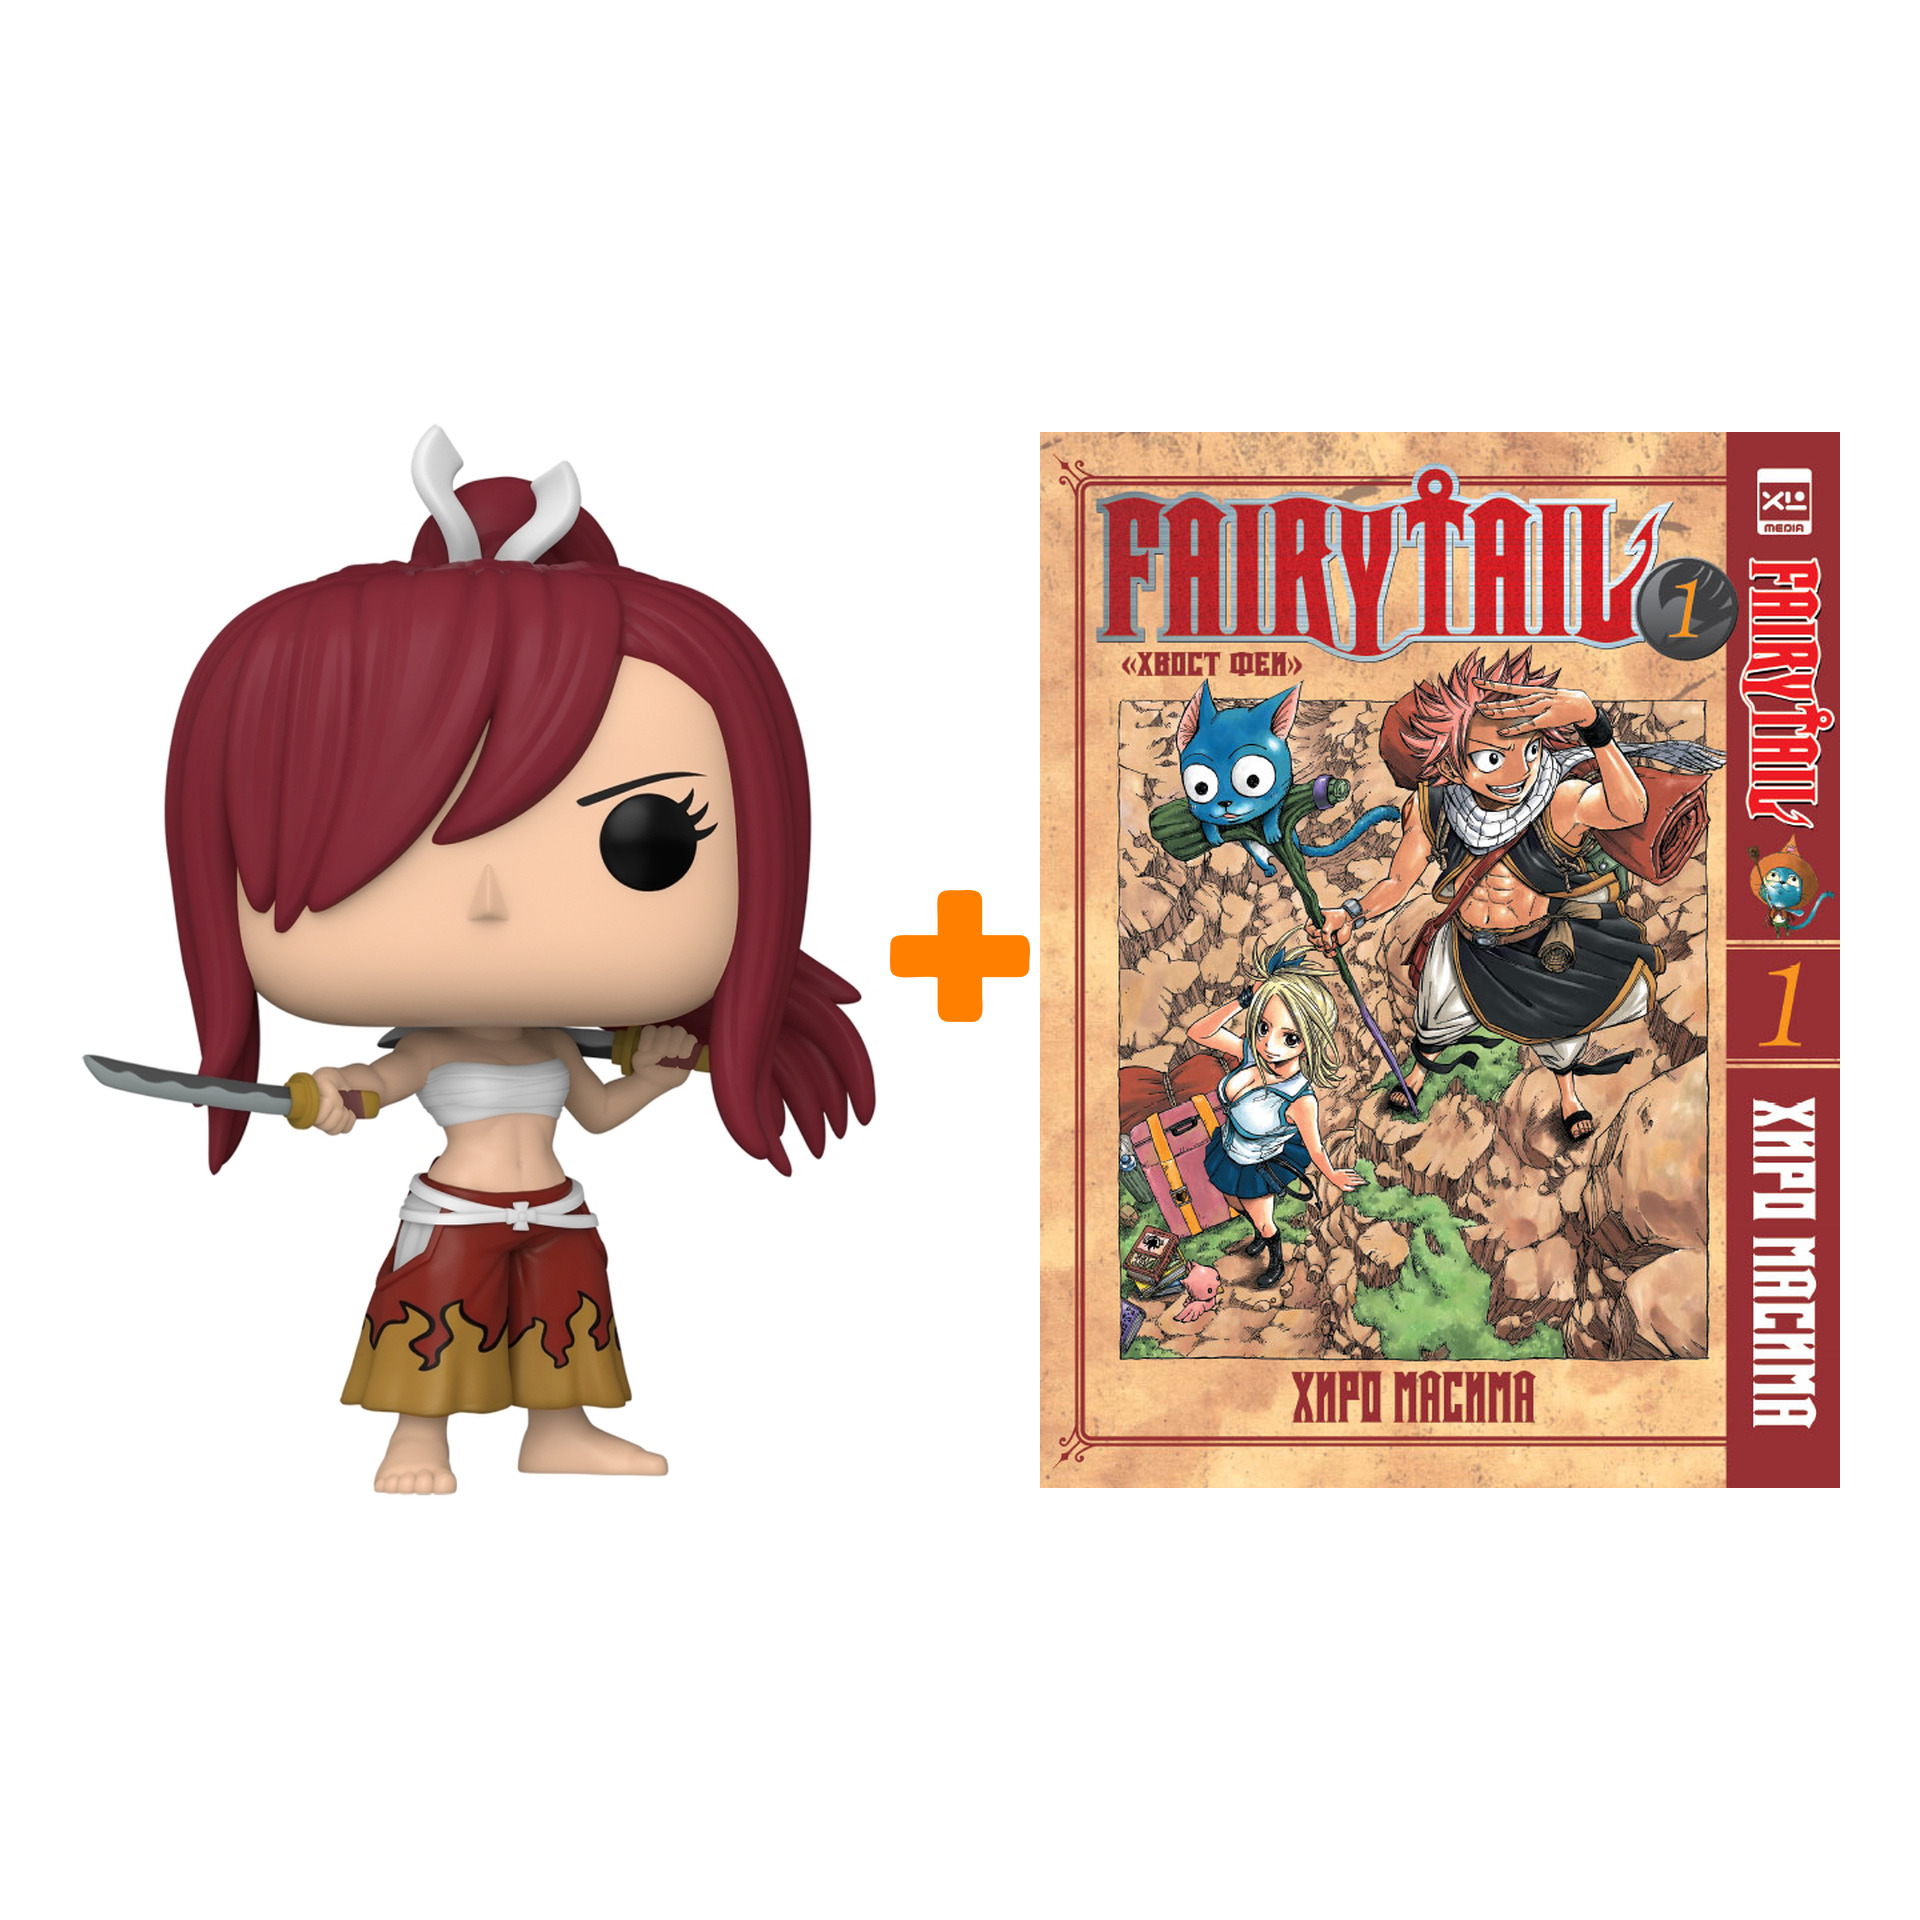 Набор Fairy Tail (фигурка Fairy Tail Erza Scarlet + манга Хвост феи 1)